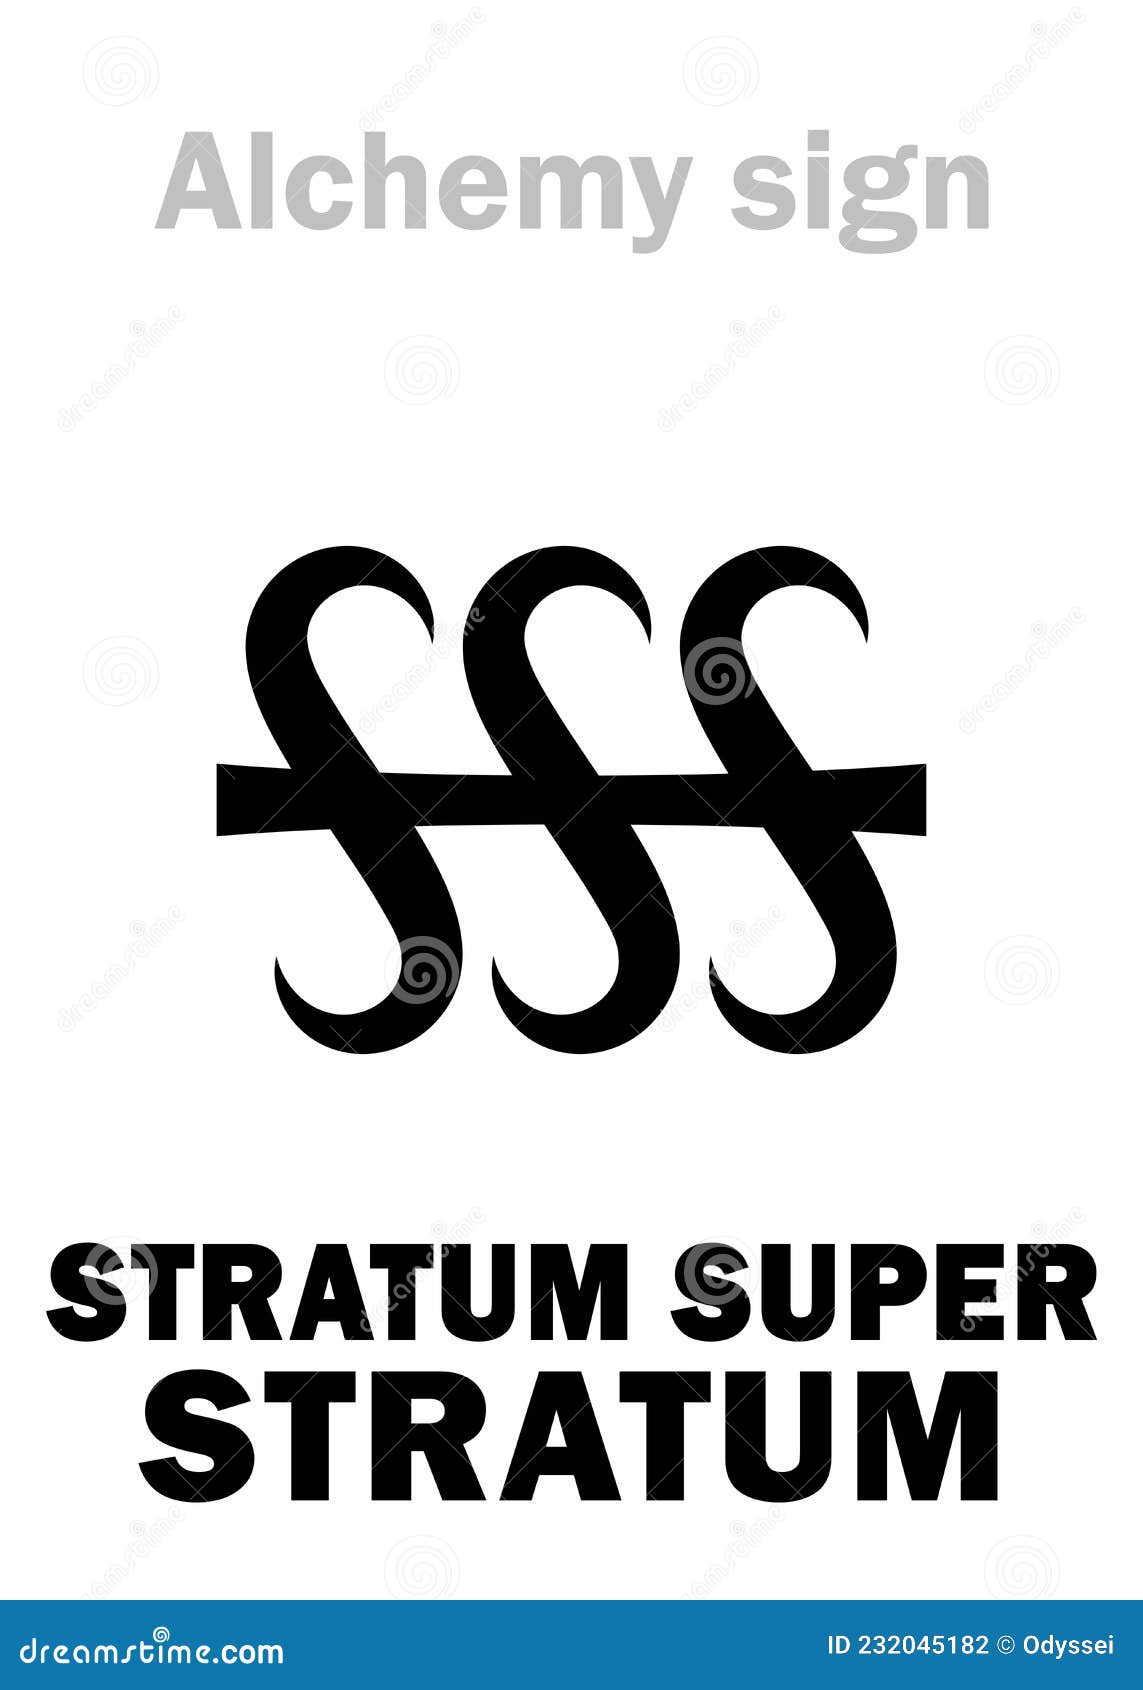 alchemy: stratum super stratum (Ã¢â¬Ålayer on layerÃ¢â¬Â)